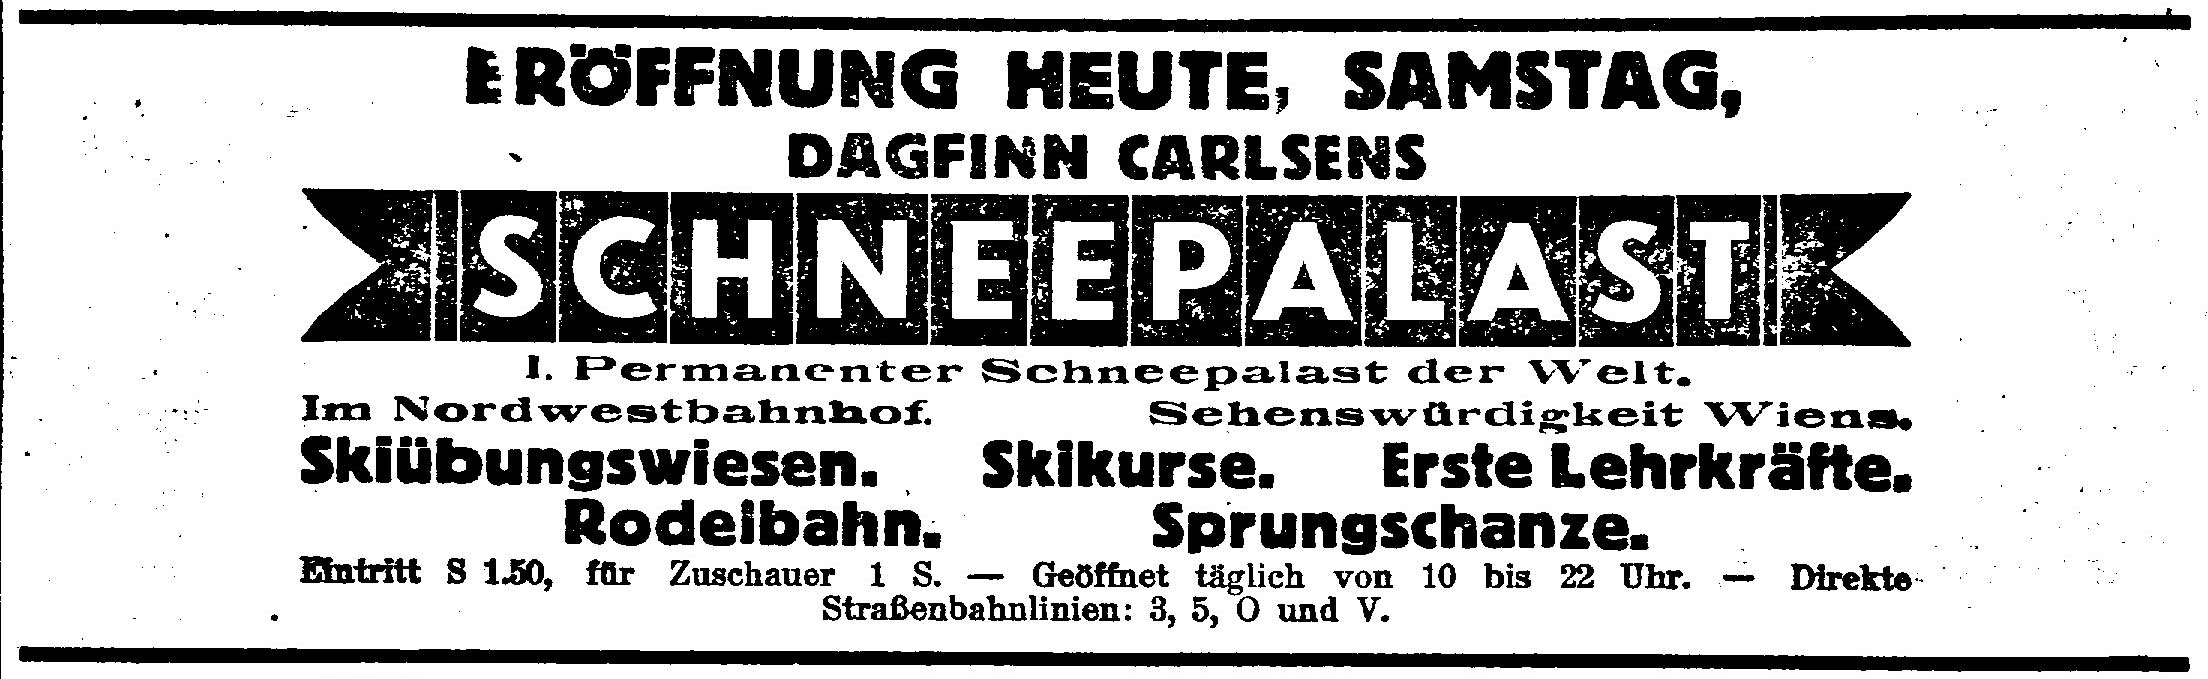 Anzeige aus dem Sporttagblatt, 26. November 1927, Quelle: Anno/ÖNB 